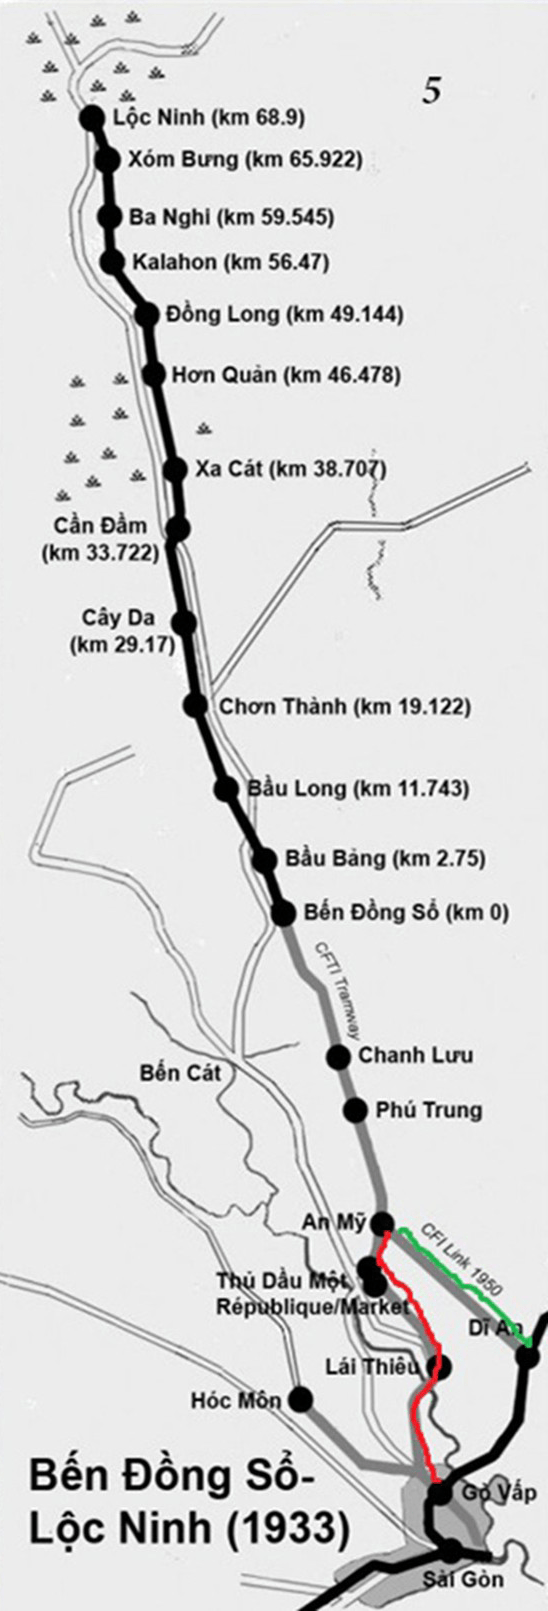 Sơ đồ tuyến đường sắt Sài Gòn (Dĩ An)  - Lộc Ninh